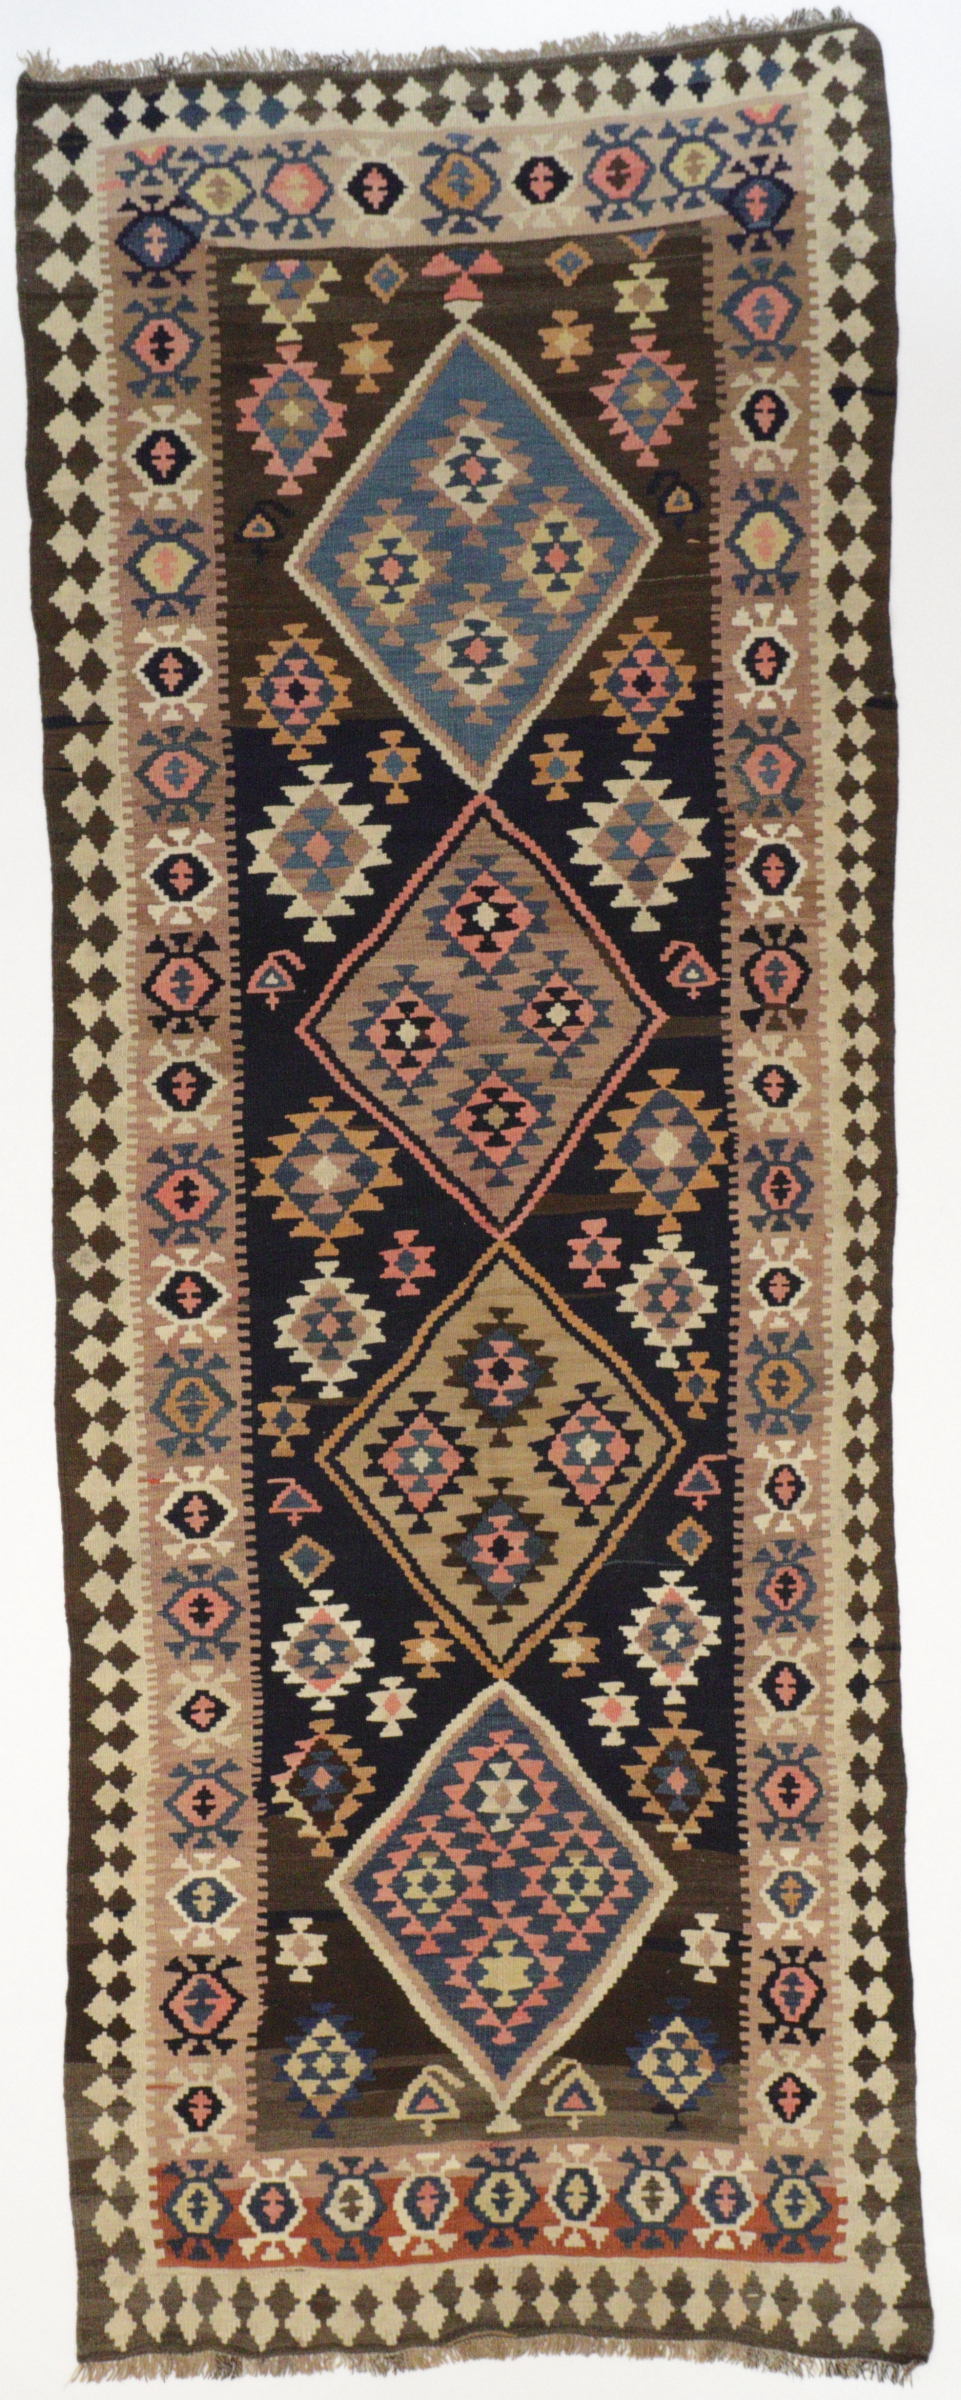 Persischer Kelim, handgewebt, aus reiner Schurwolle, pflanzengefärbt, mehrfarbig, Draufsicht